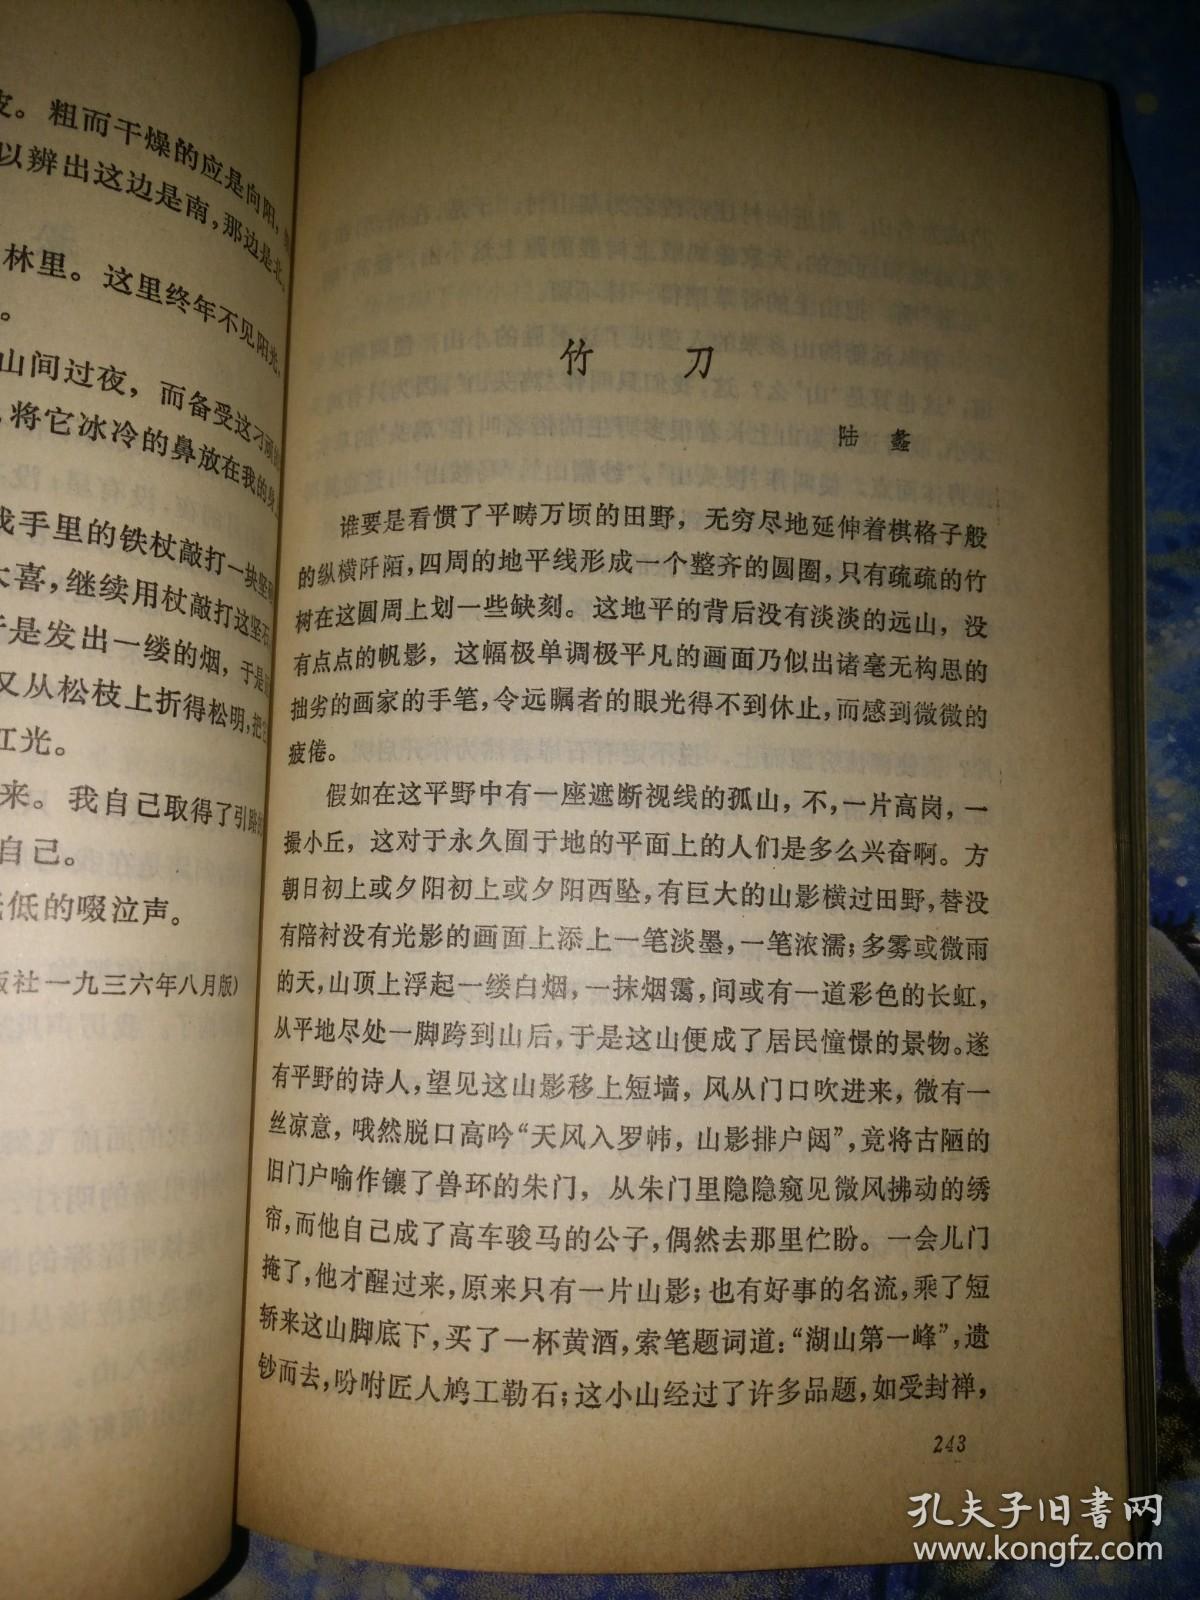 中国现代散文选  第四卷（1918--1949） 【无藏书票，有订书针】